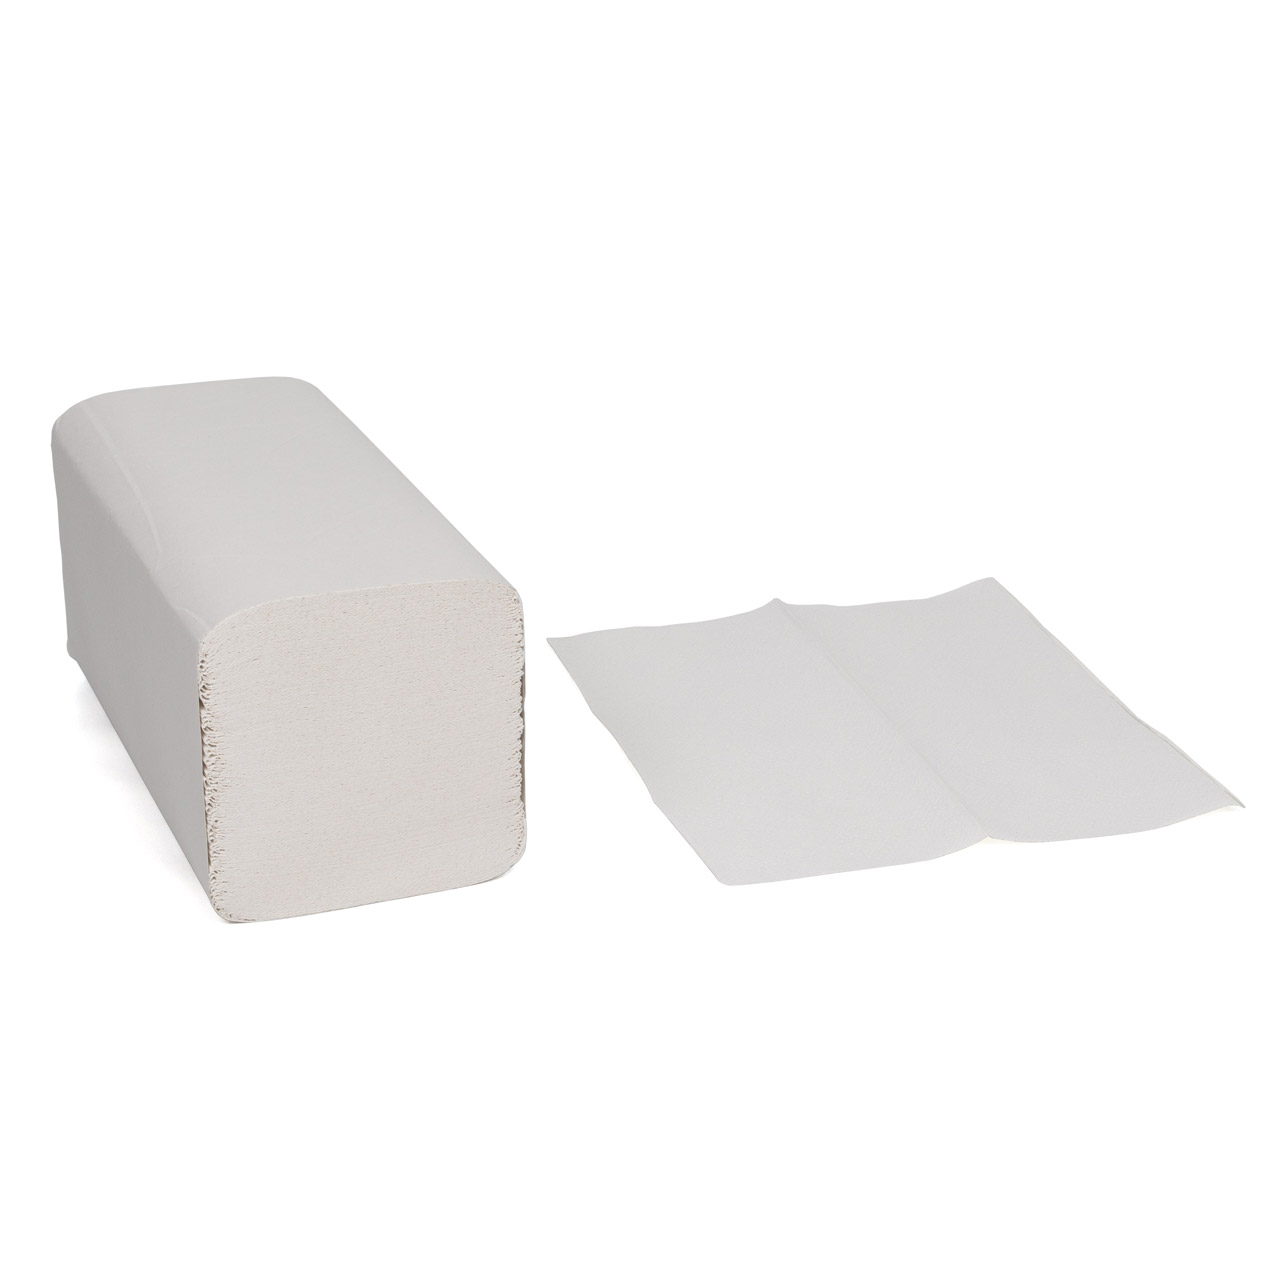 3200 Blatt Handtuchpapier Falthandtücher Papierhandtücher 2-lagig 25x23cm weiß